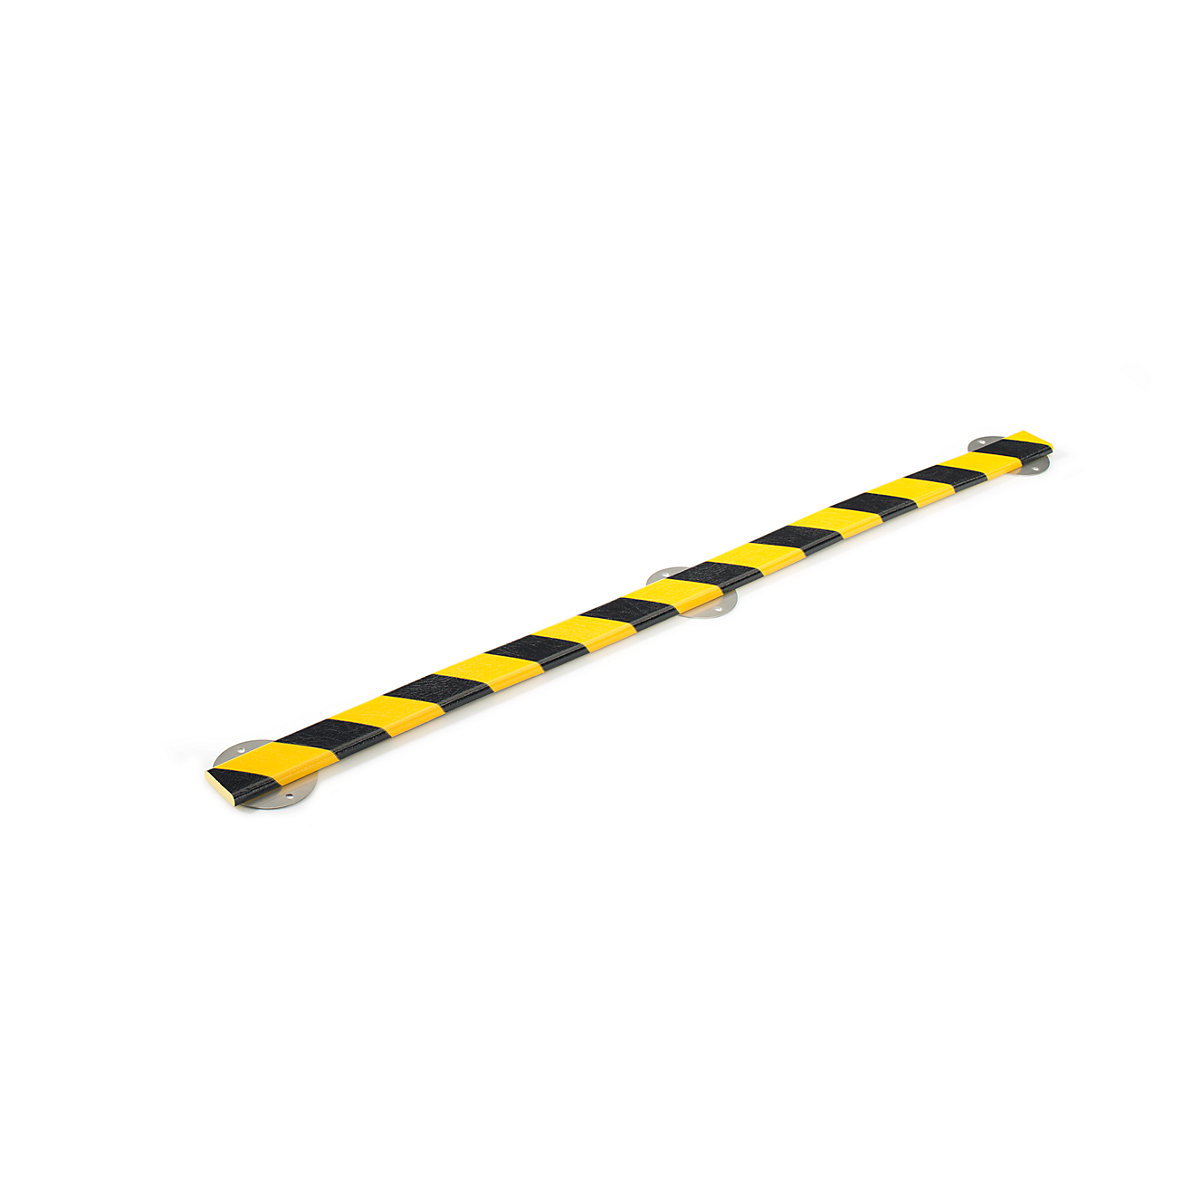 Protecție pentru suprafețe Knuffi® cu șină de montaj – SHG, tip F, bucată de 1 m, galben / negru